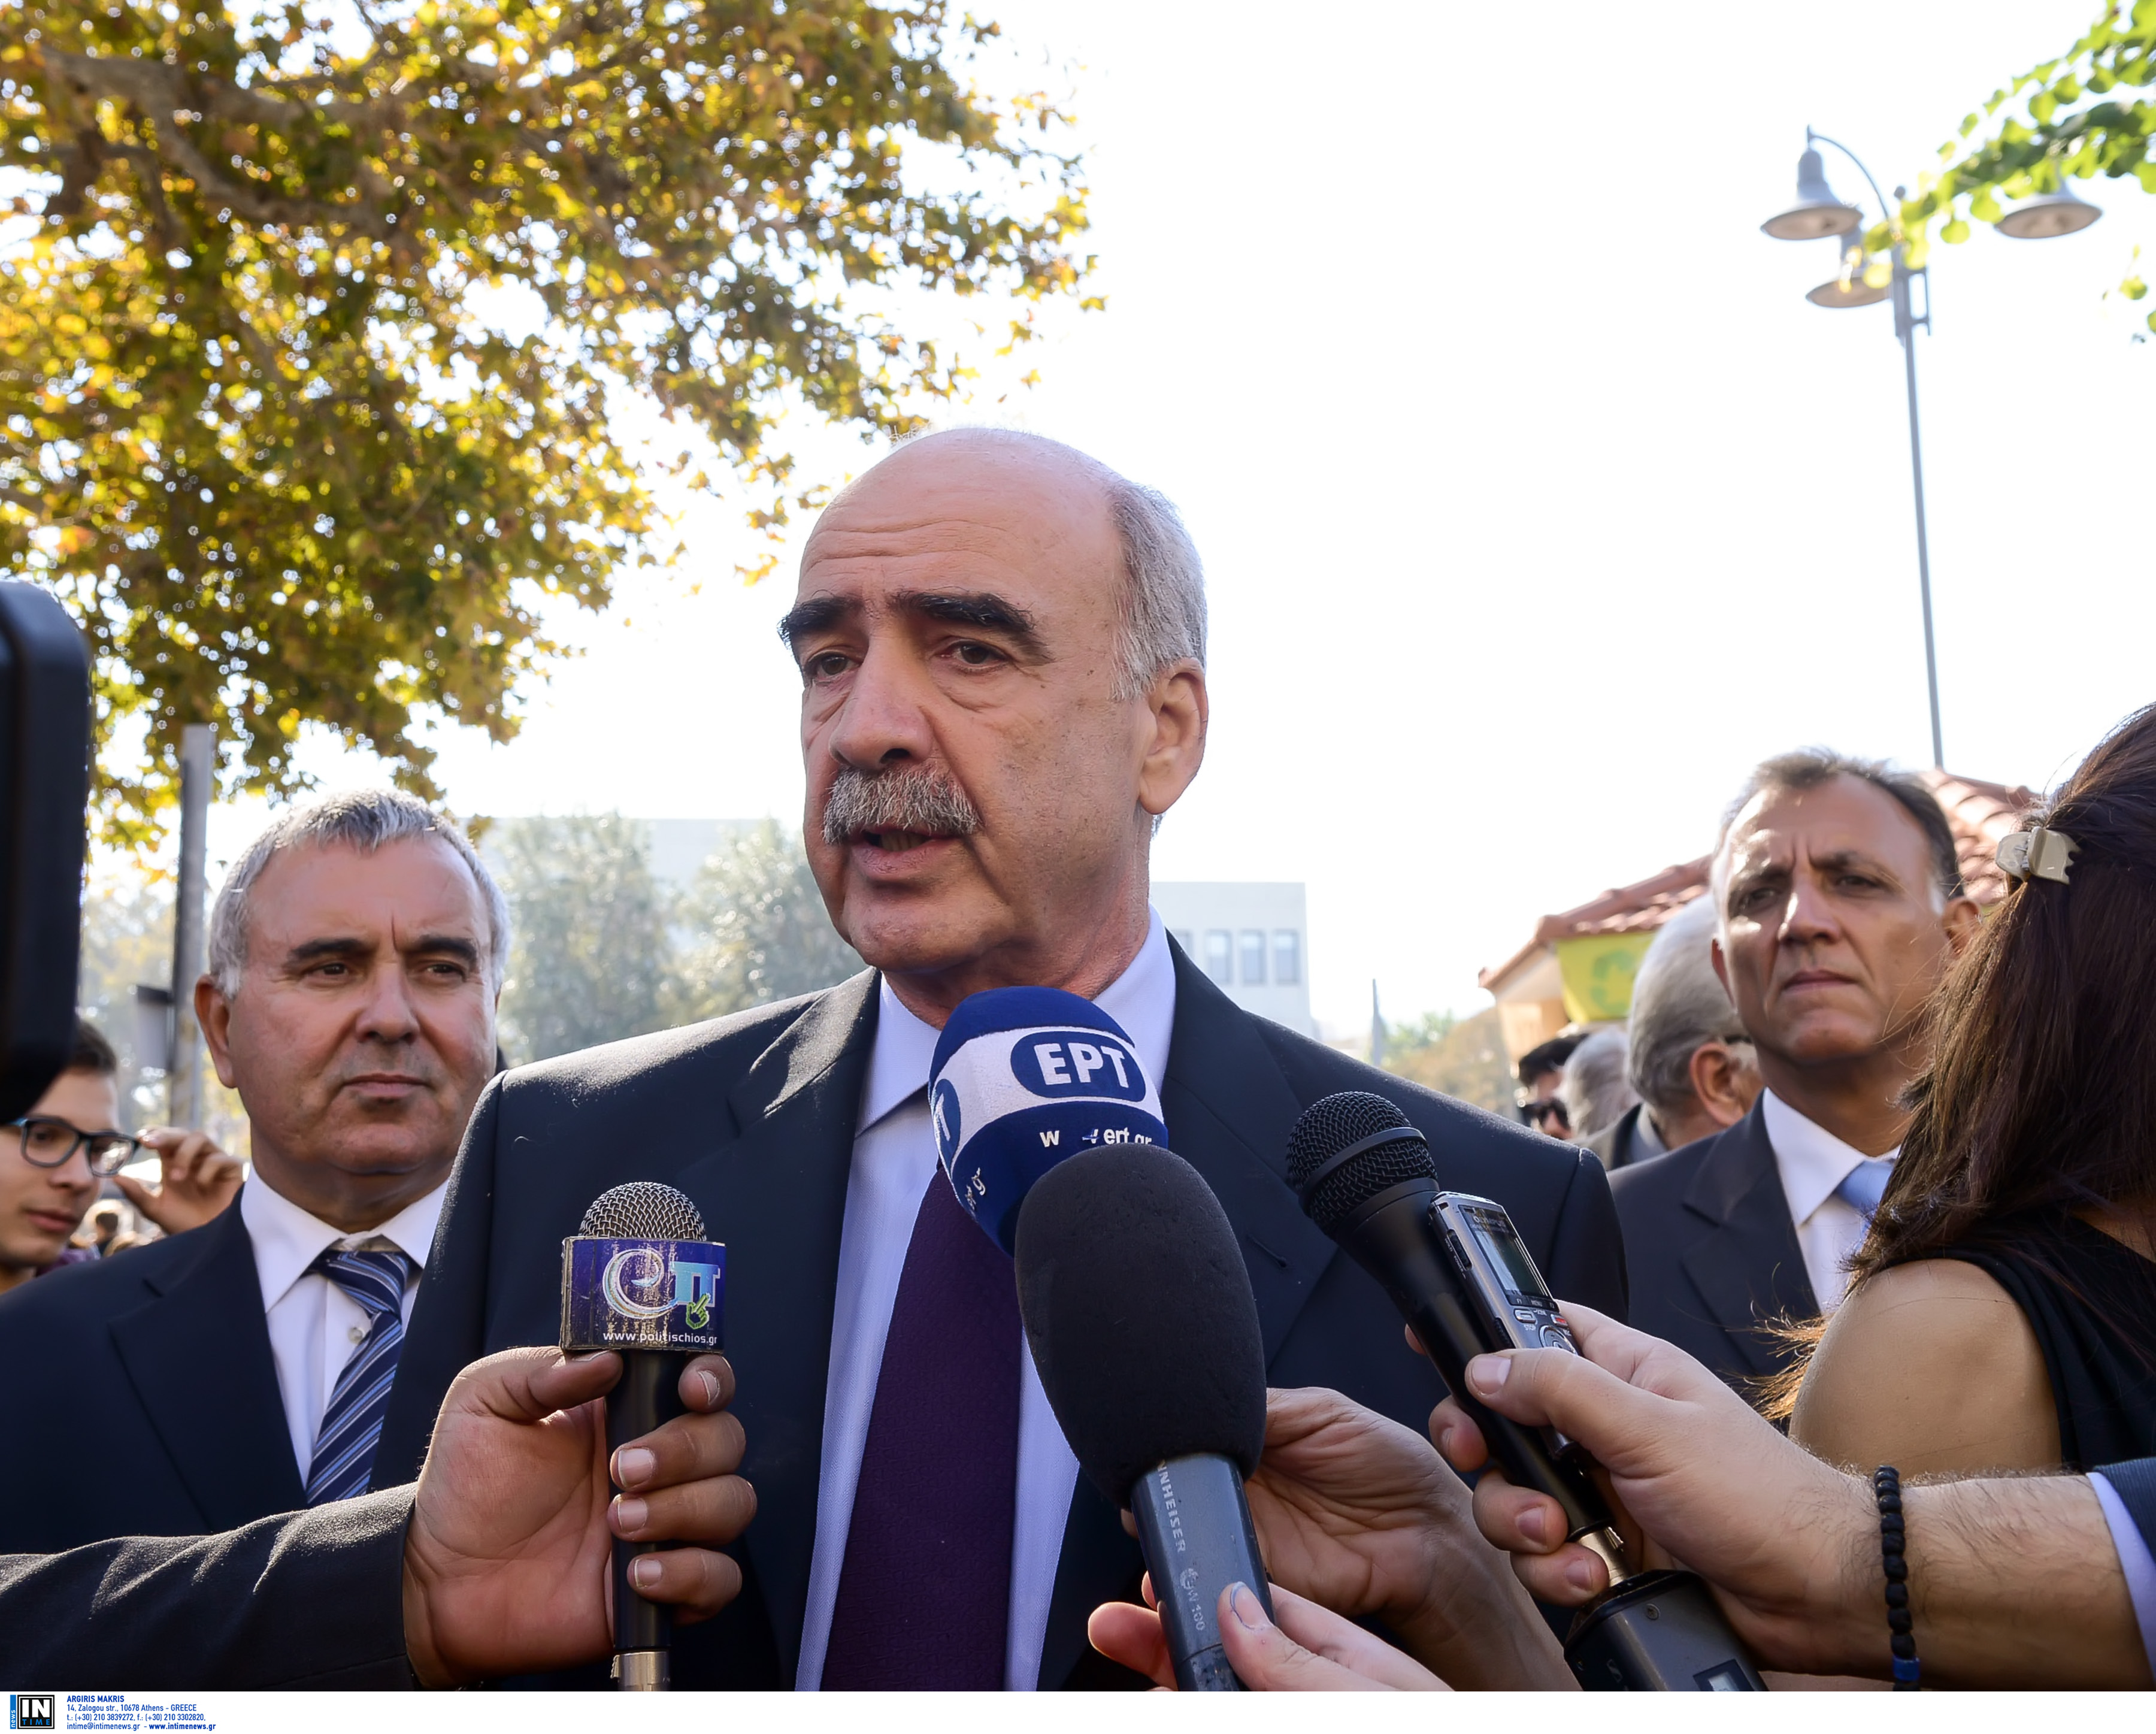 Μεϊμαράκης: Παραιτούμαι από πρόεδρος της ΝΔ αν παραιτηθούν και οι άλλοι τρεις από τις θέσεις τους